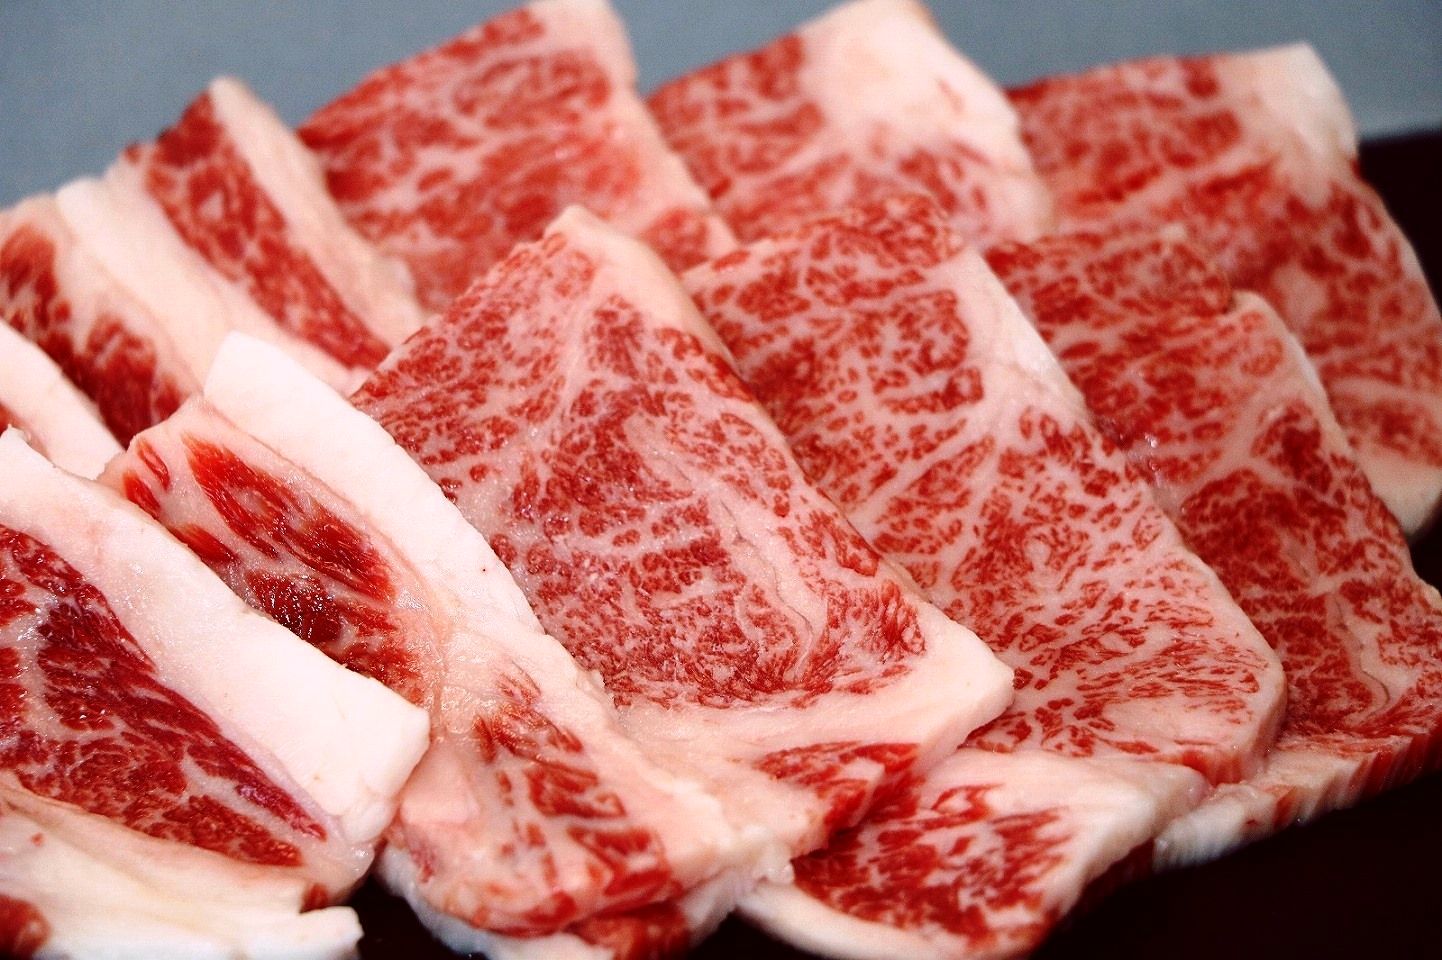 【全て米沢牛】 豪華バーベキューセット / 入っているお肉は 日本三大和牛の一つ「米沢牛」です！ご自宅用です。※熨斗対応不可画像